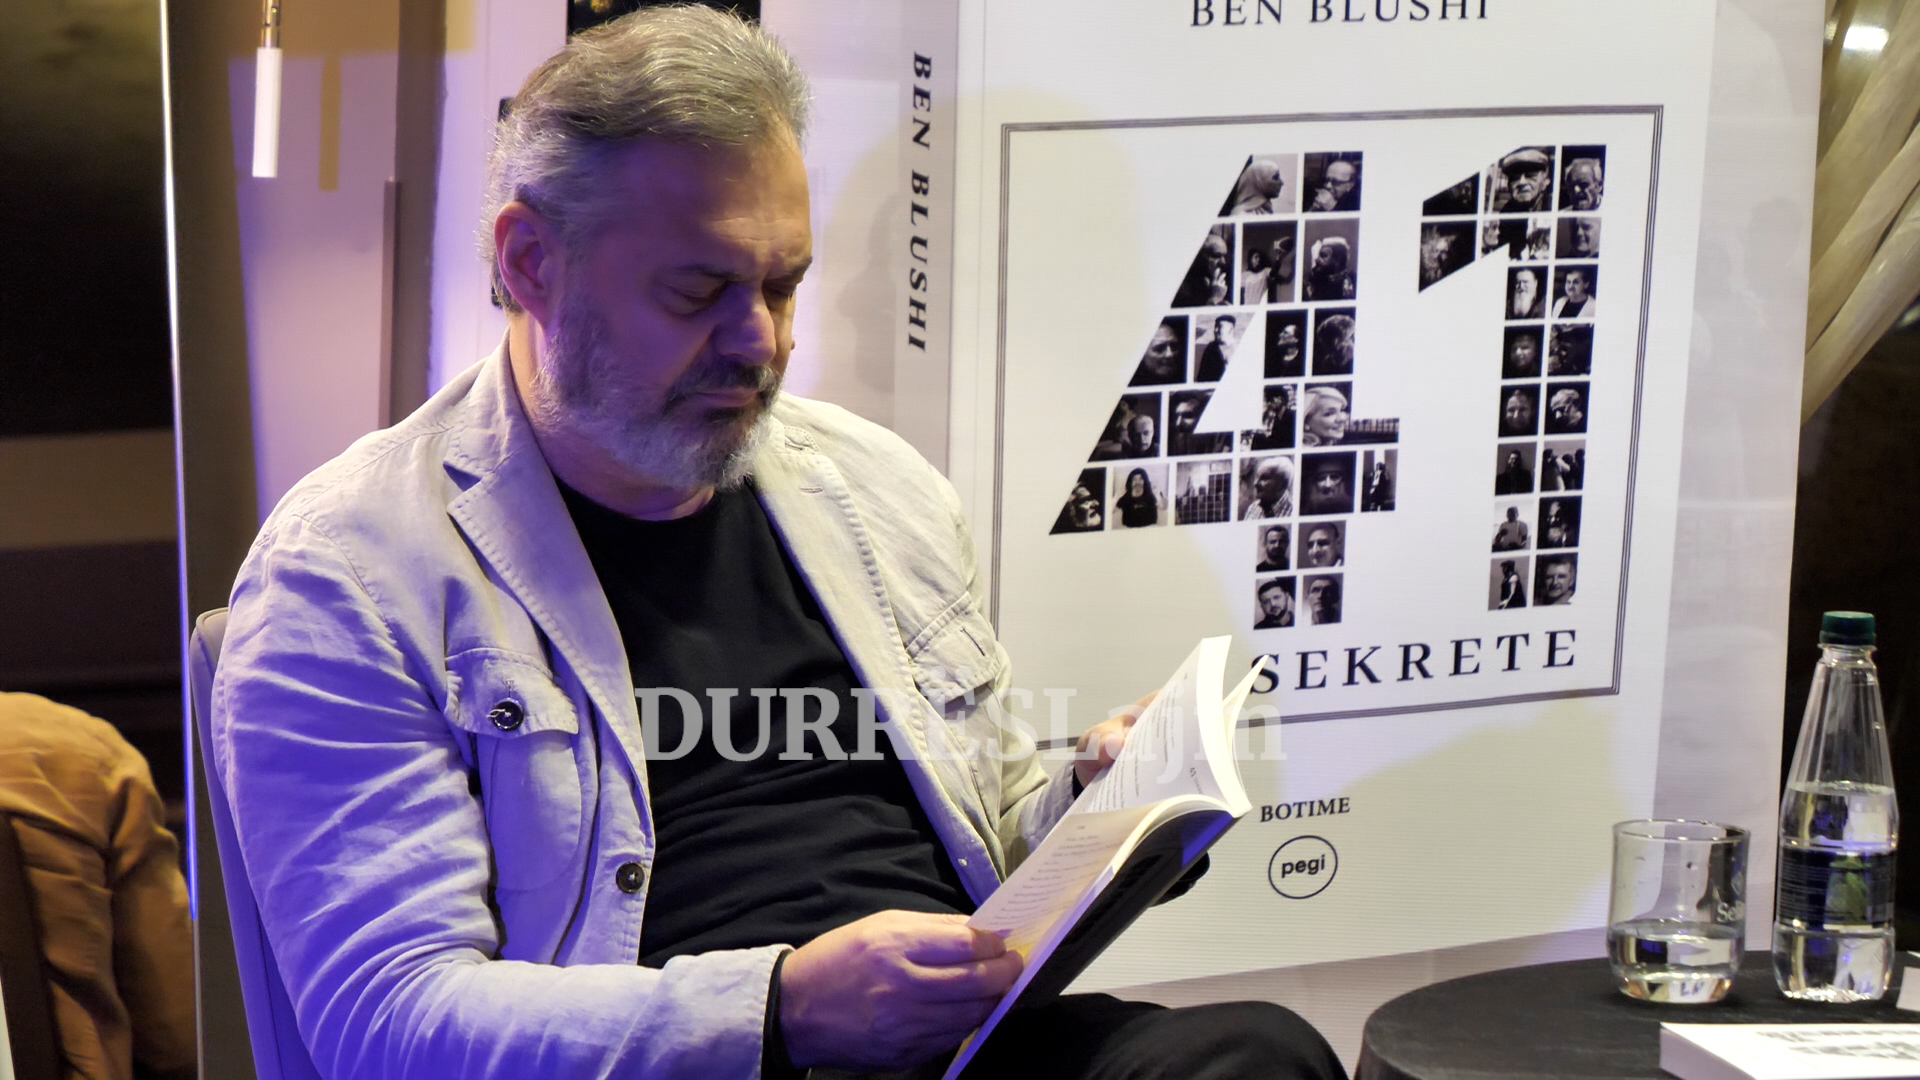 Promovon librin e tij në Durrës, Blushi: &#8220;41 sekrete&#8221; ka krijuar keqkuptime me disa personazhe (VIDEO)